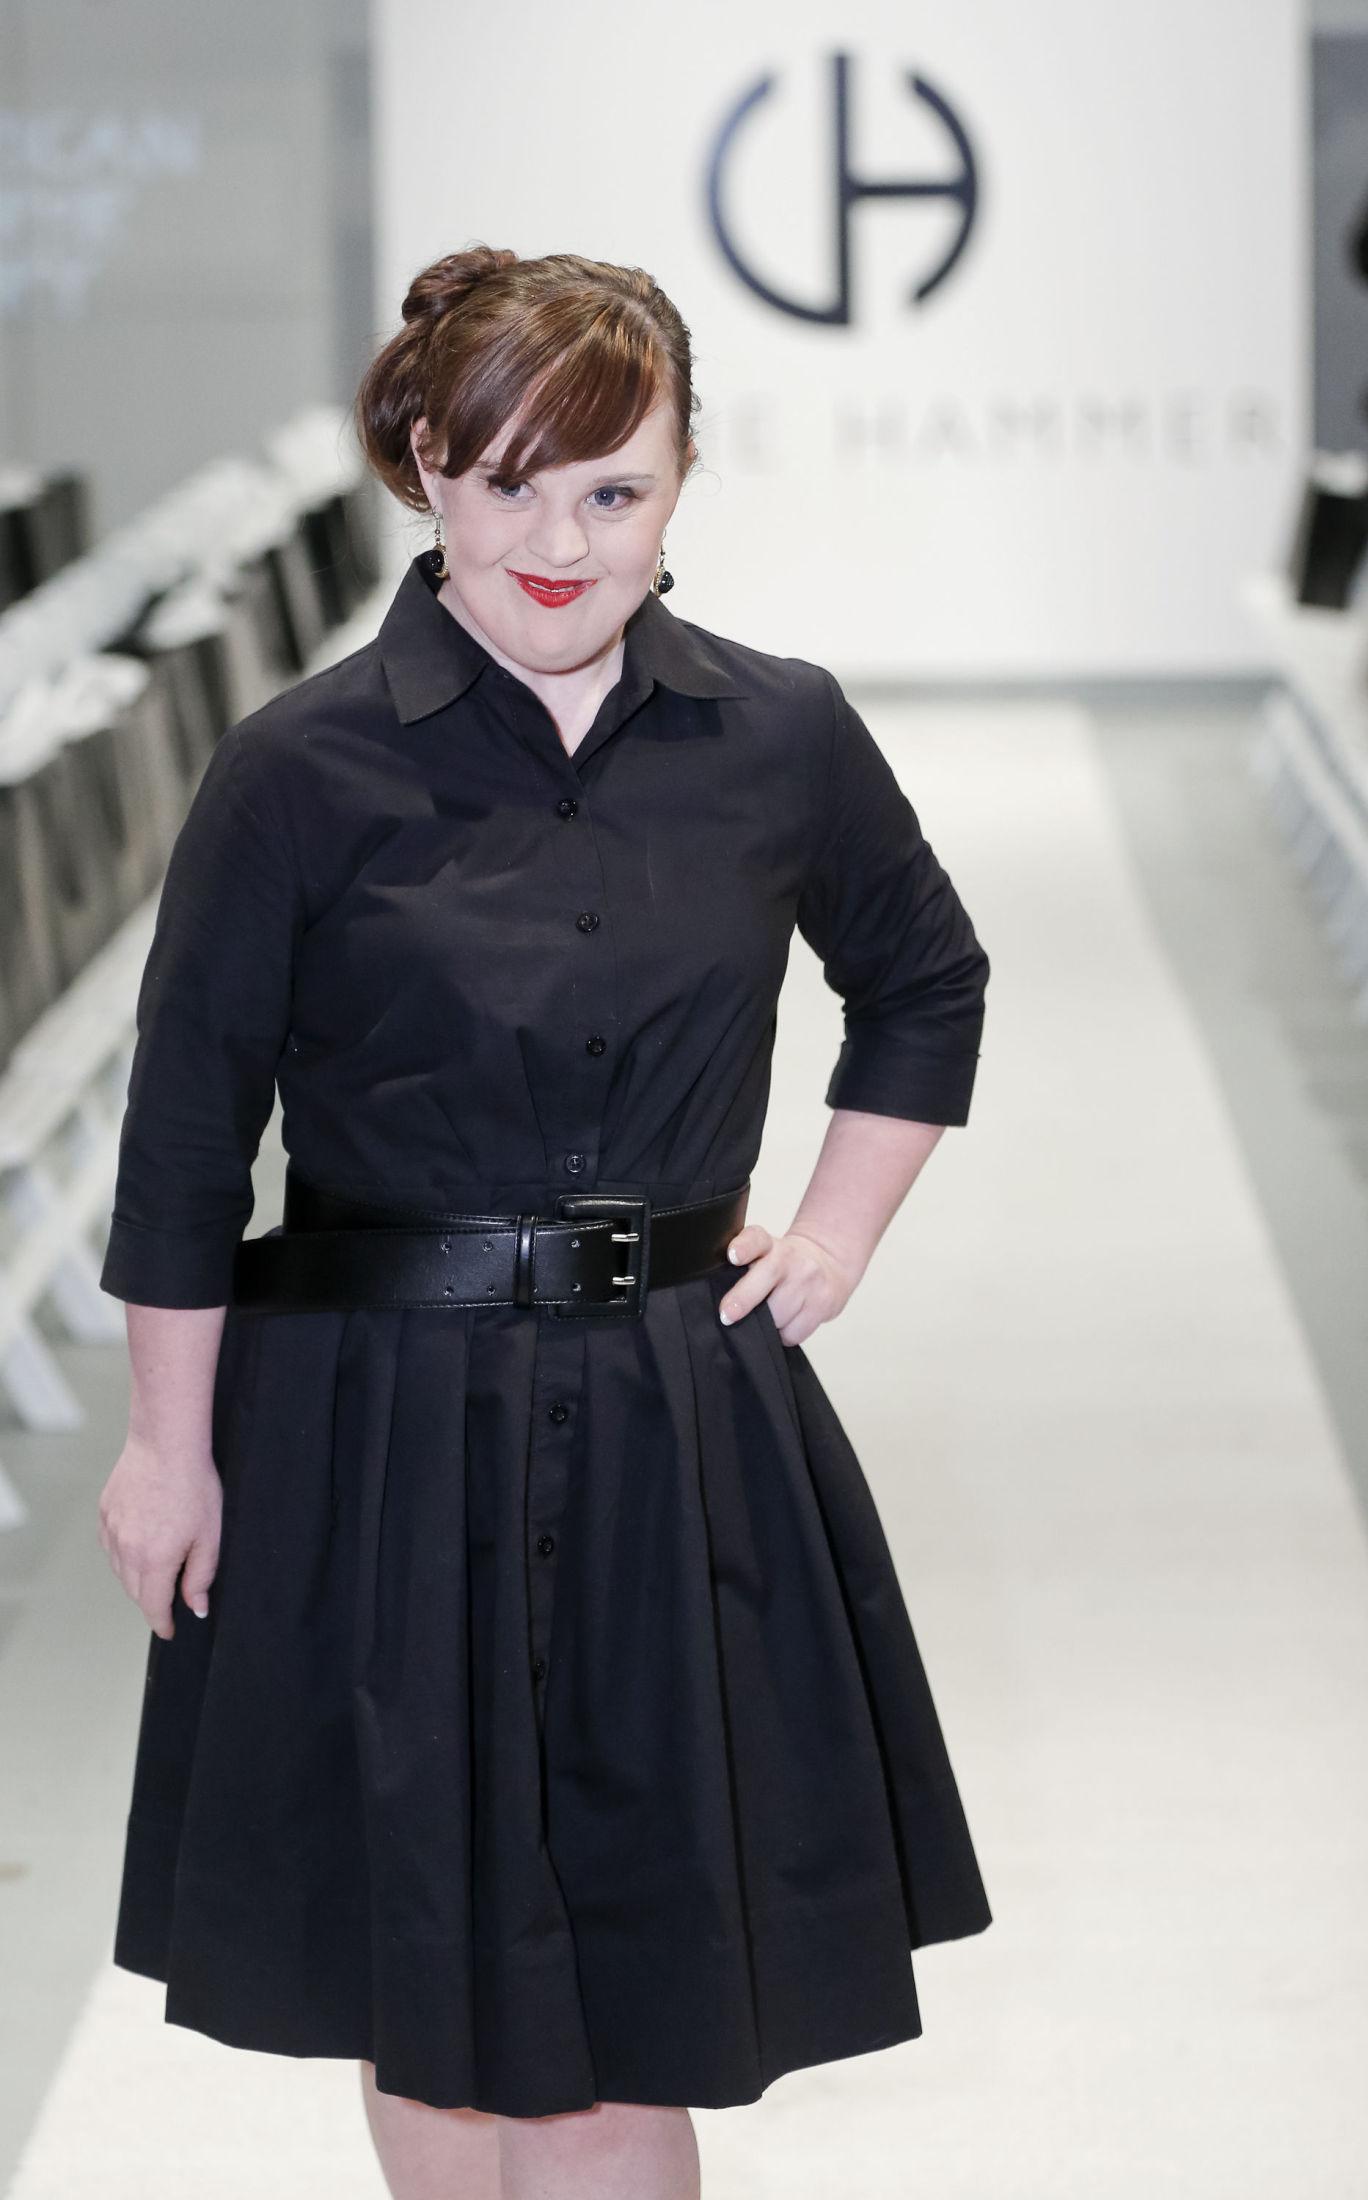 ROLLEMODELL: Jamie Brewer på designeren Carrie Hammers visning under New York Fashion week i februar. Foto: GETTY IMAGES